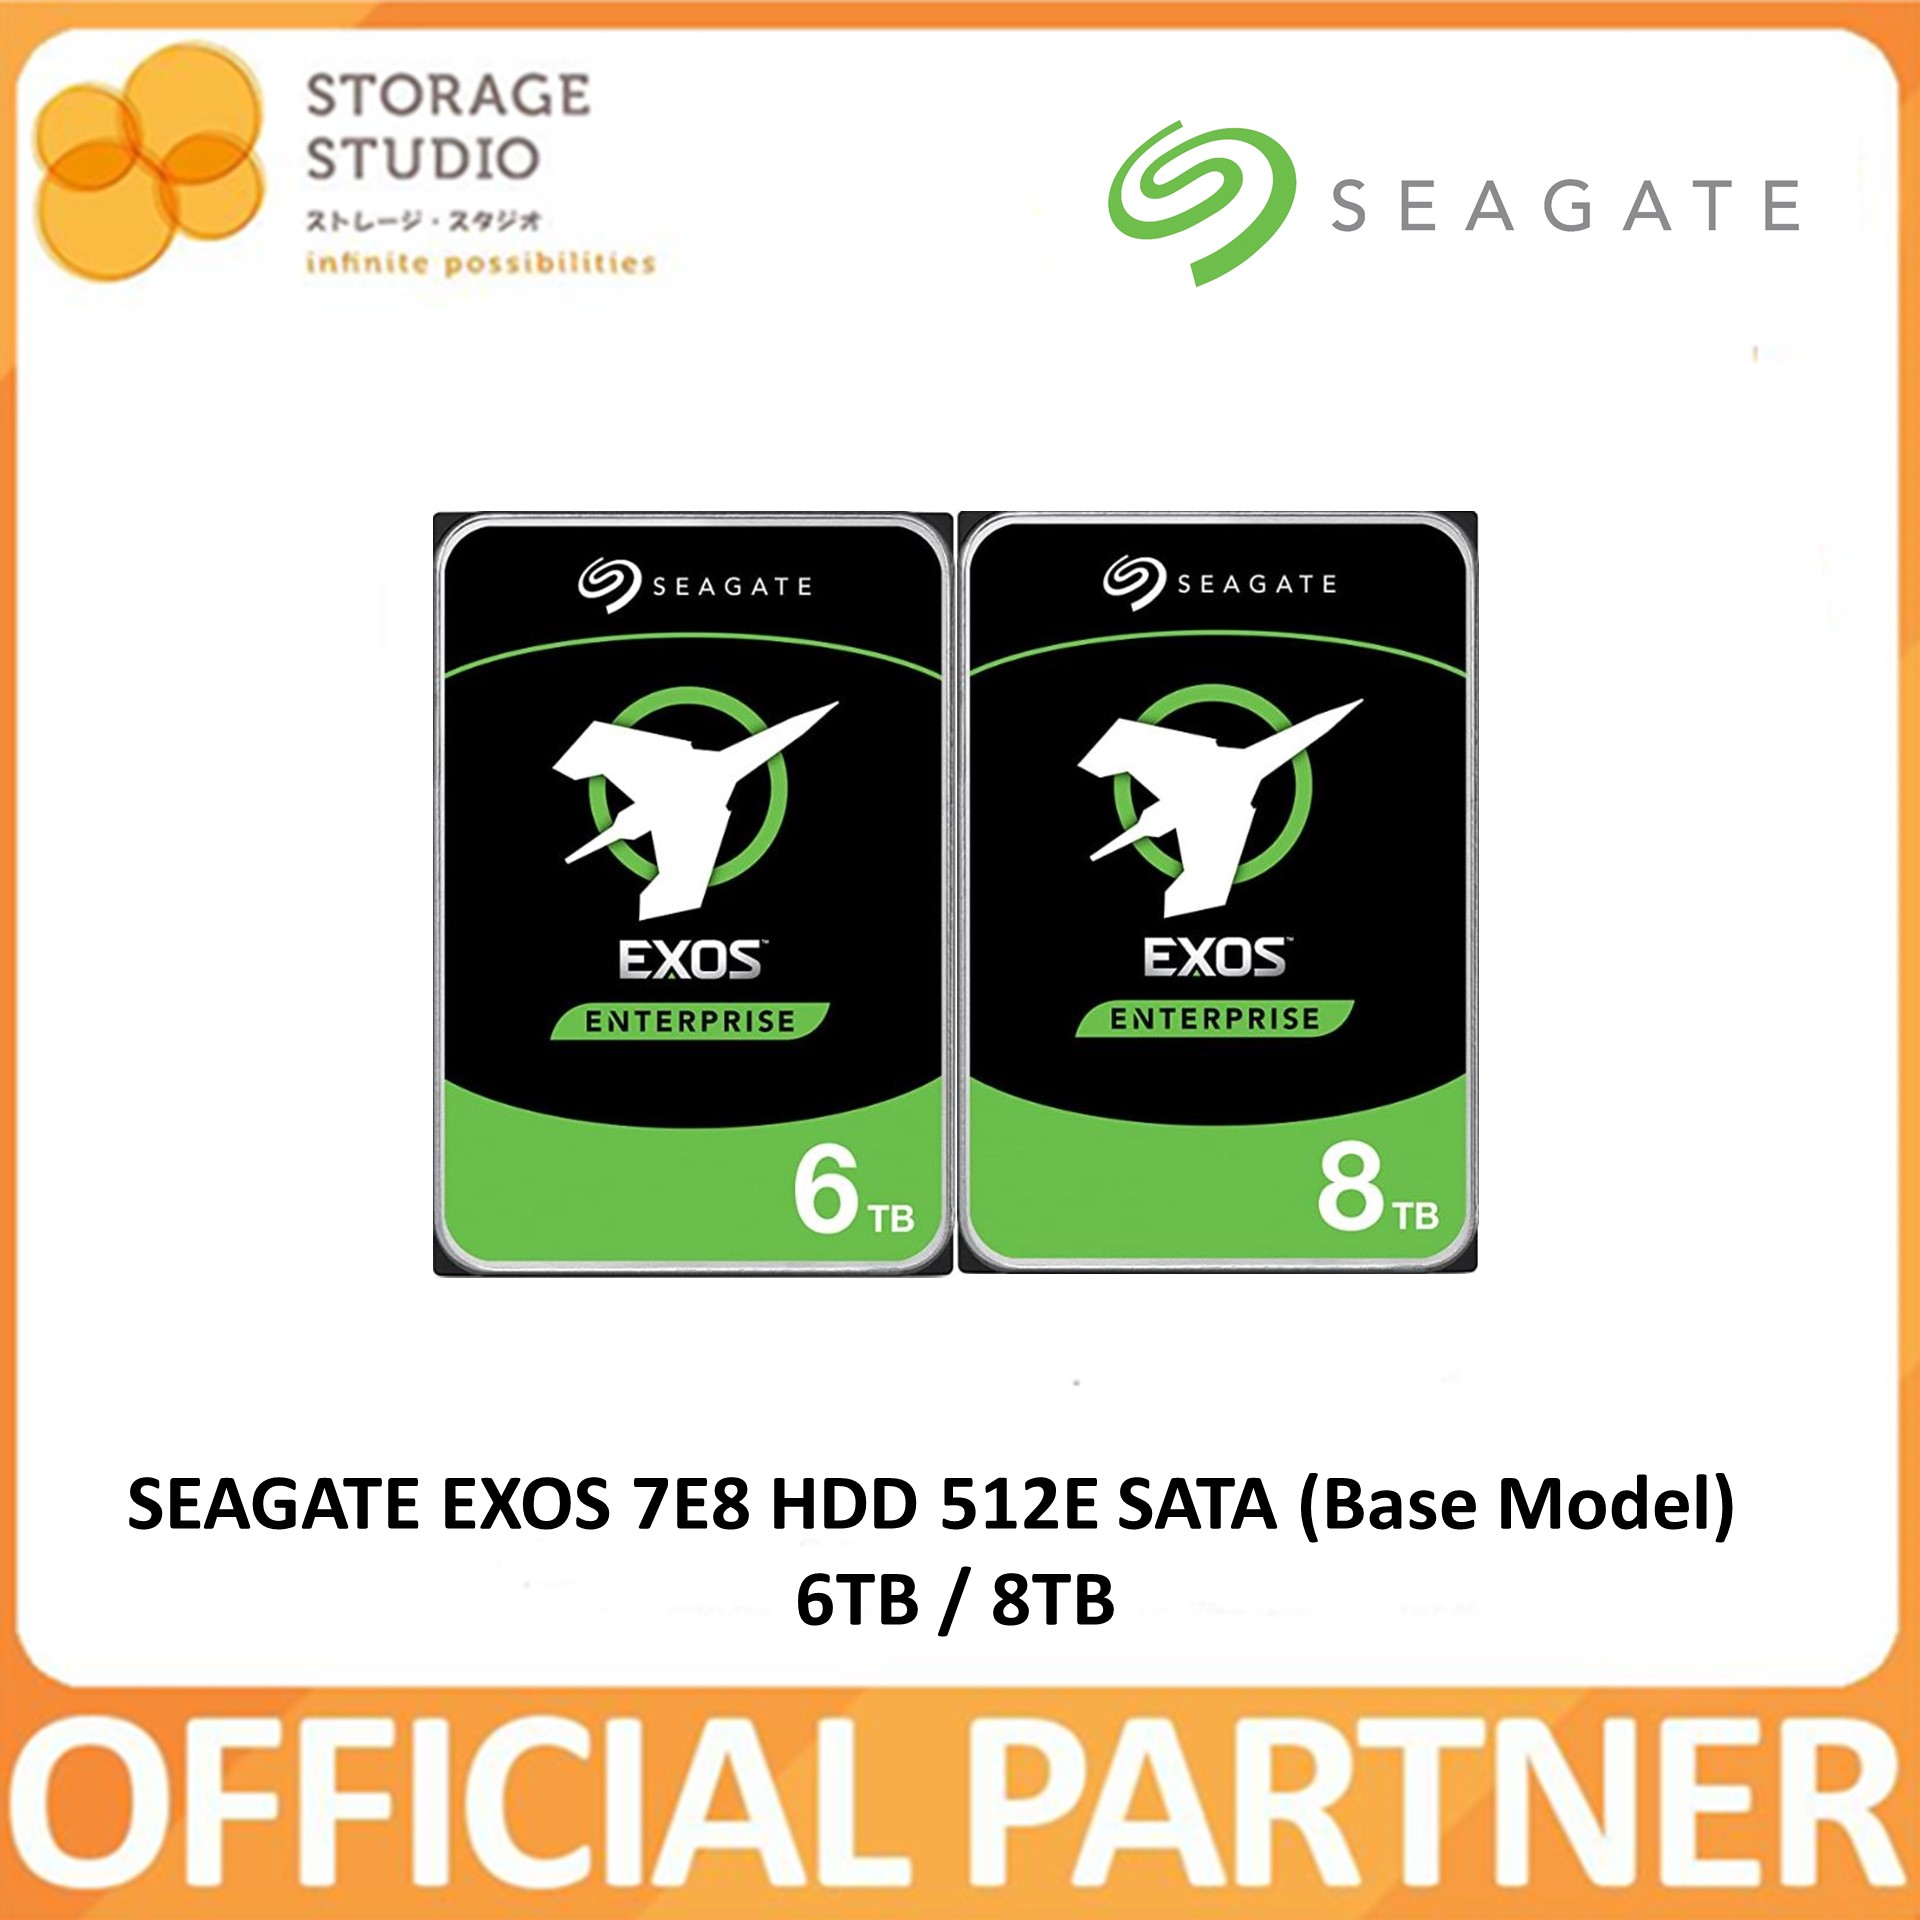 SEAGATE EXOS 7E8 HDD 512E SATA (Base Model)